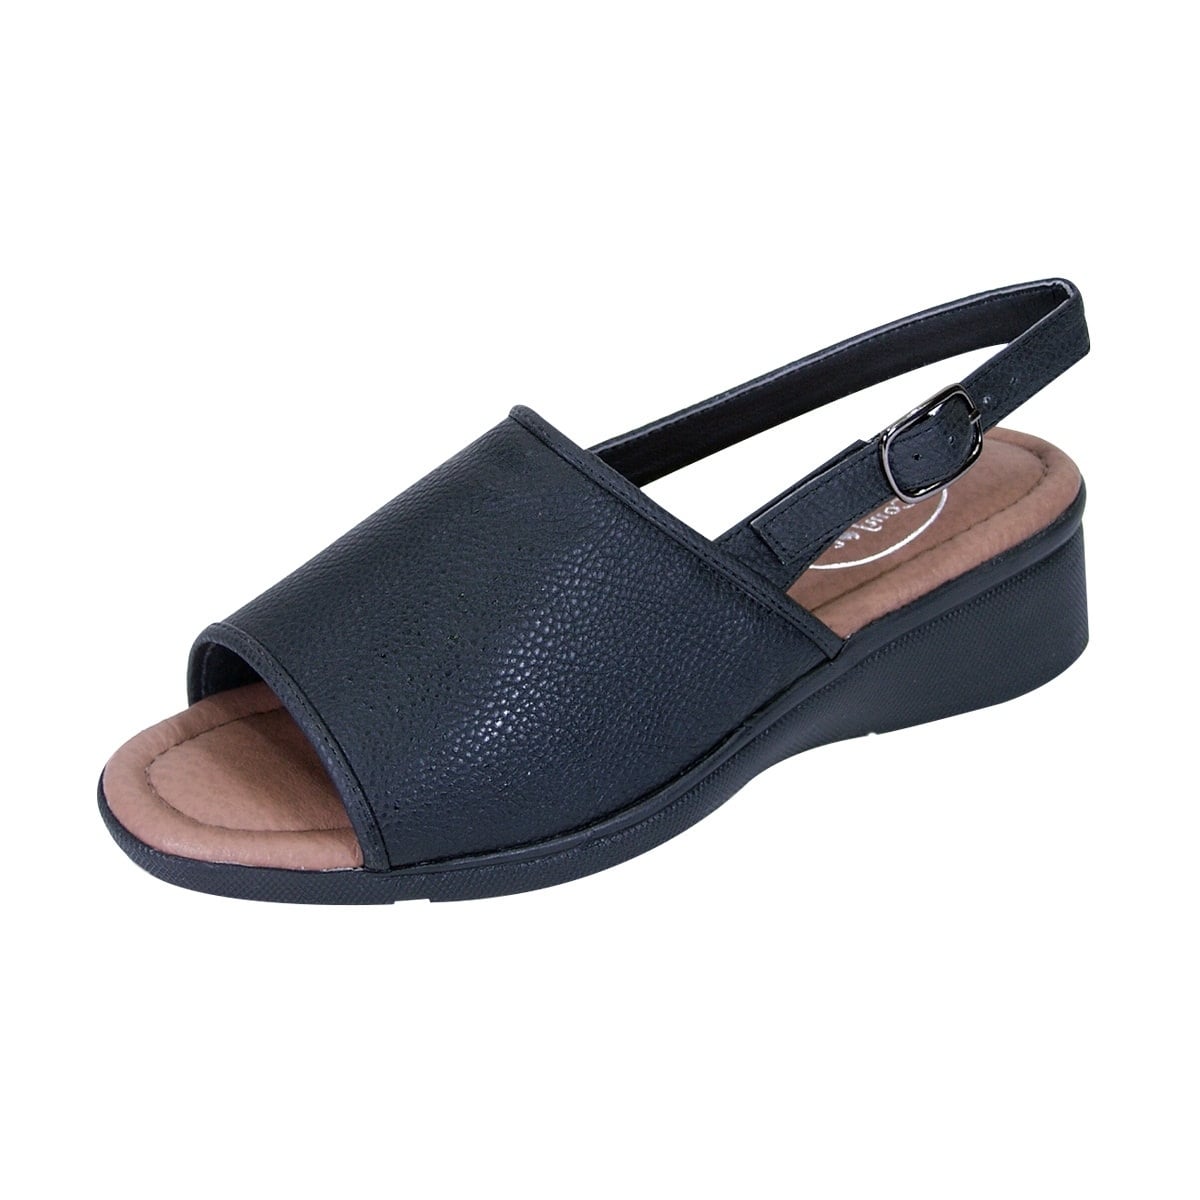 St. John's Bay Womens sandals Size 8 Wide | eBay